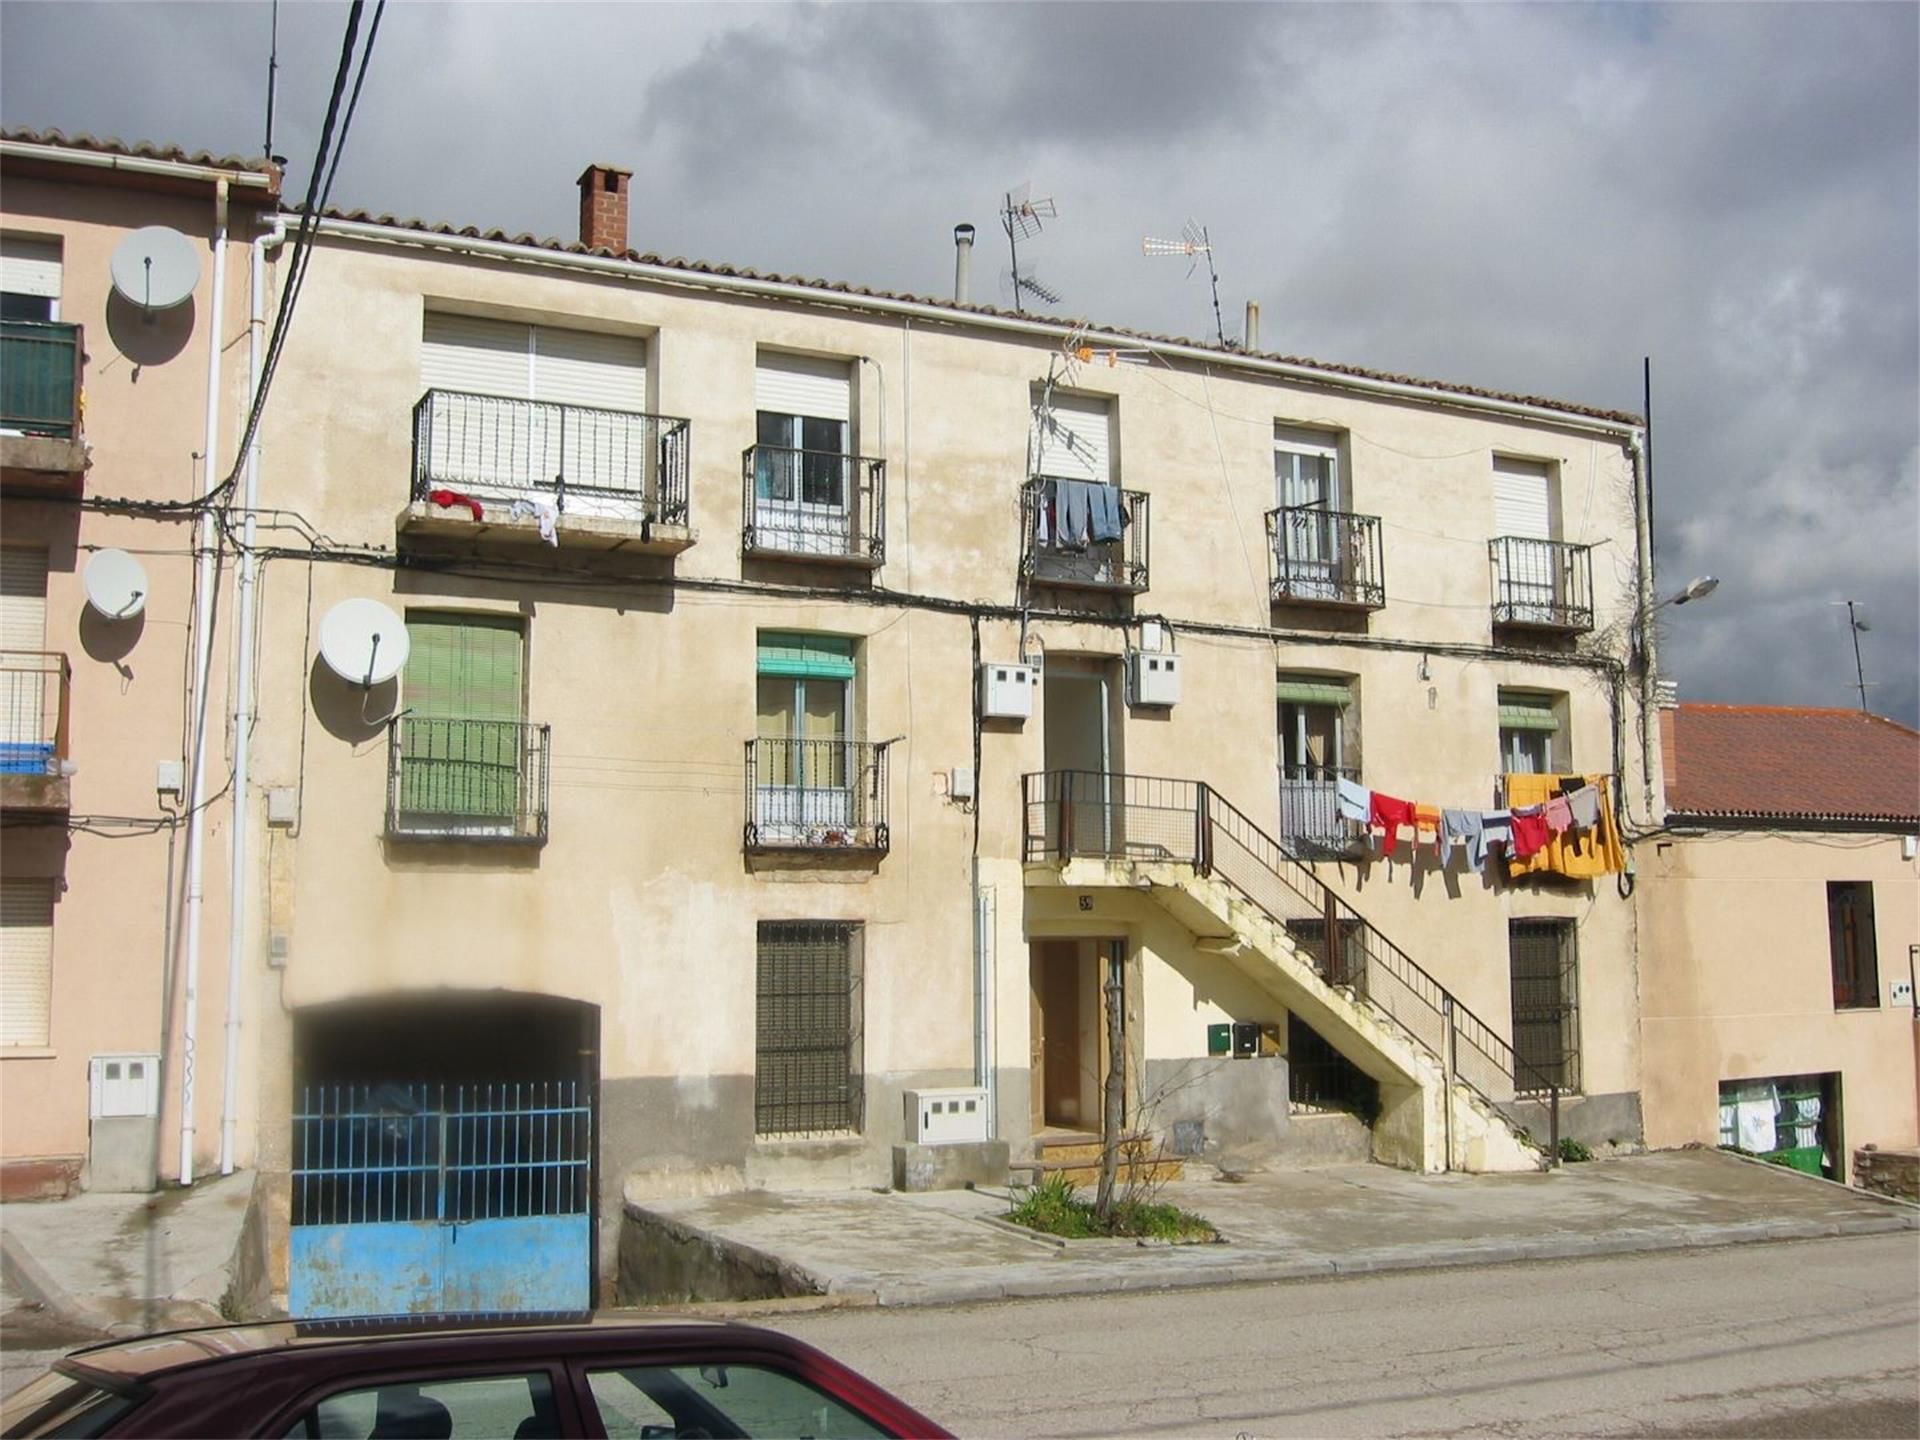 Viviendas y casas de alquiler baratas en Guadalajara Provincia | fotocasa